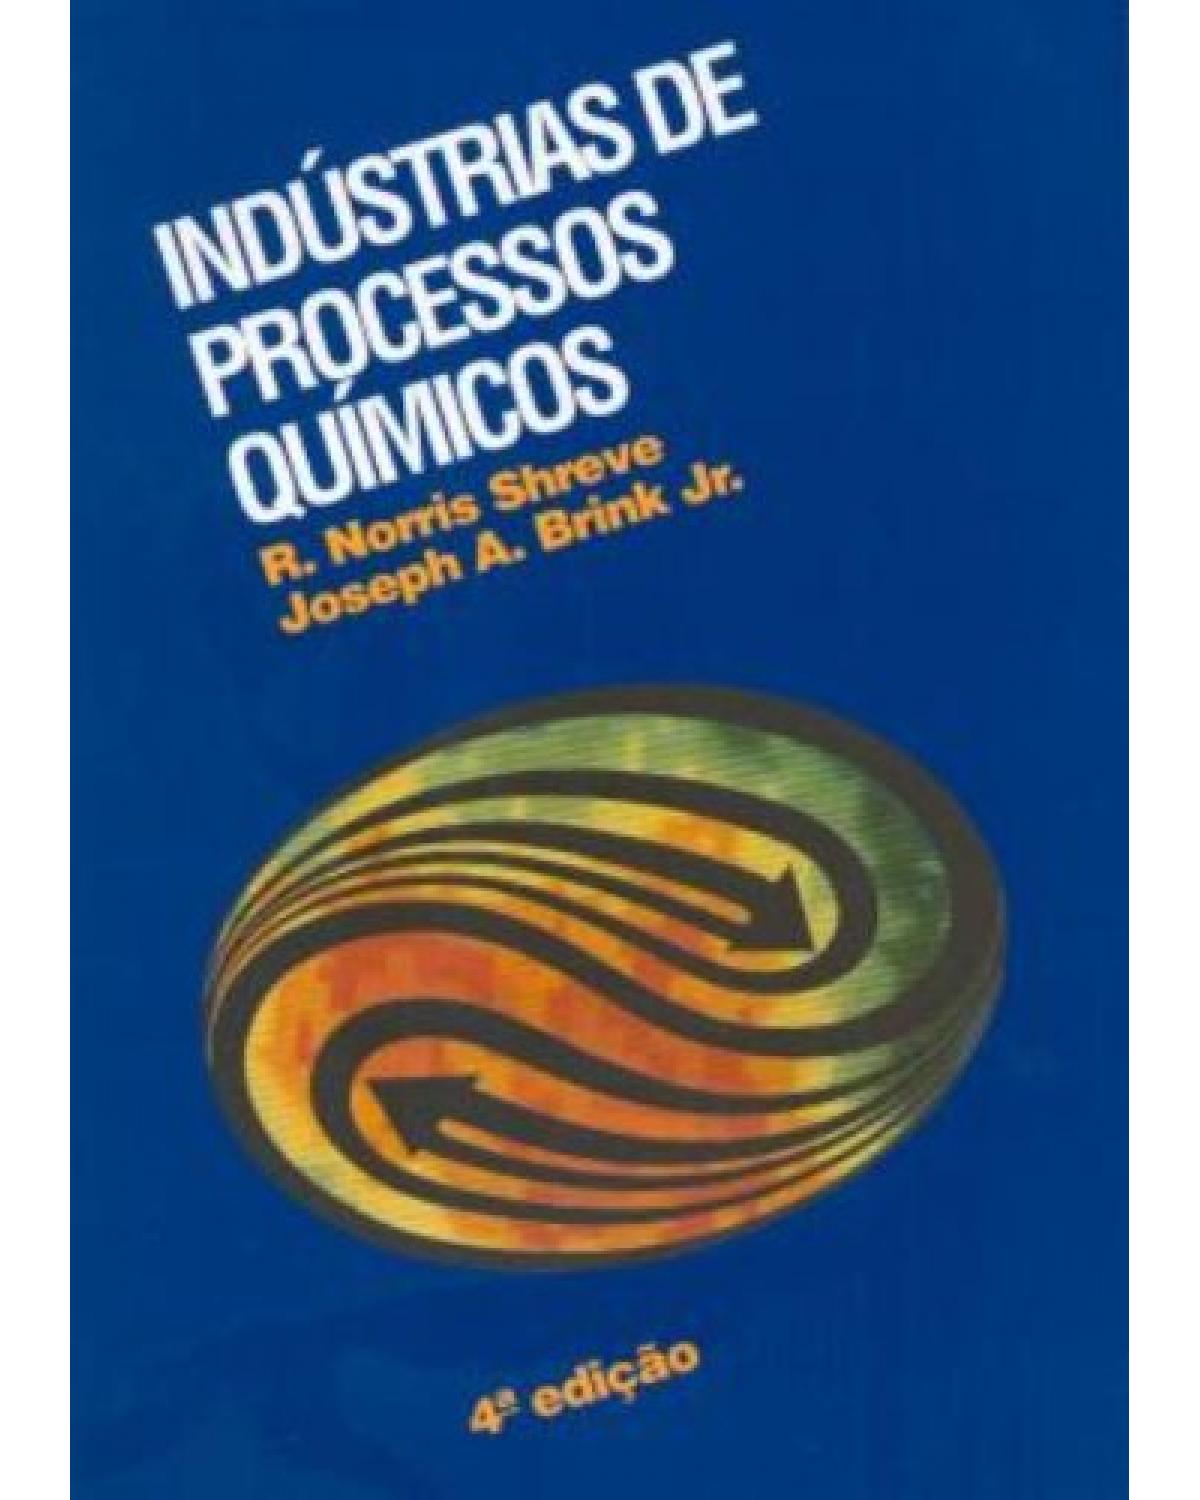 Indústrias de processos químicos - 4ª Edição | 1997